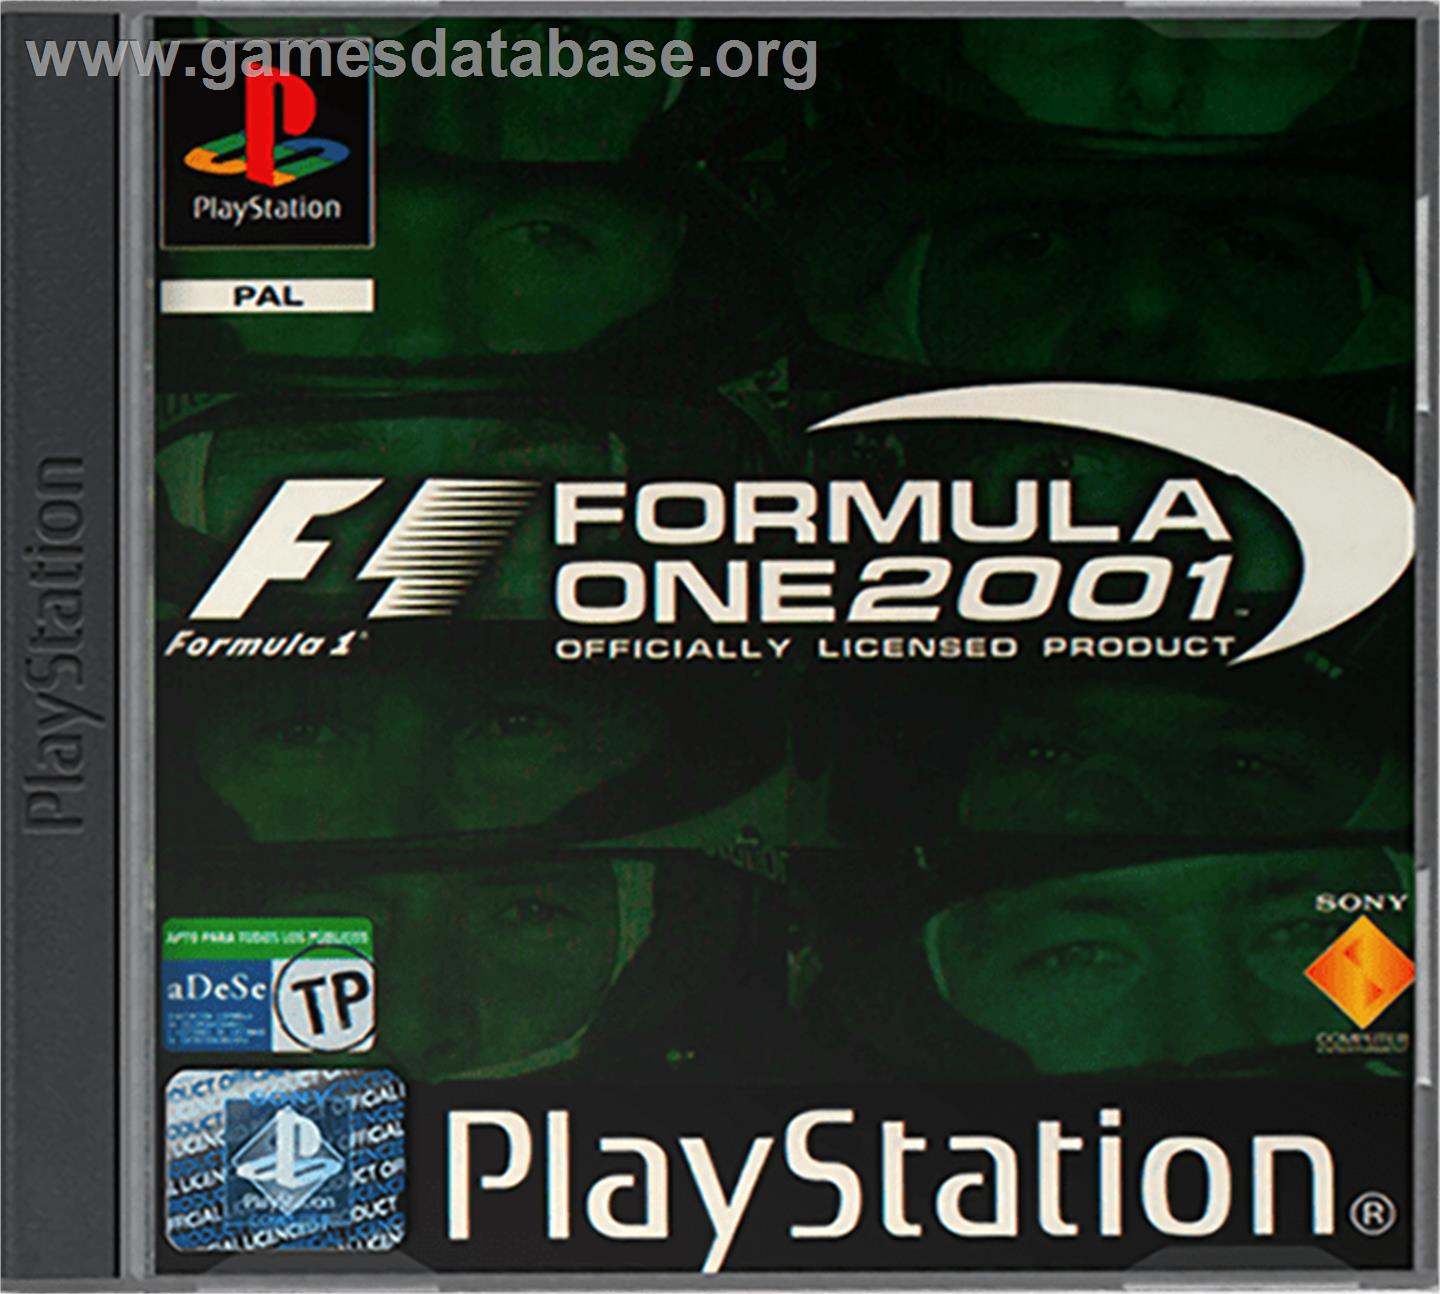 Formula One 2001 - Sony Playstation - Artwork - Box